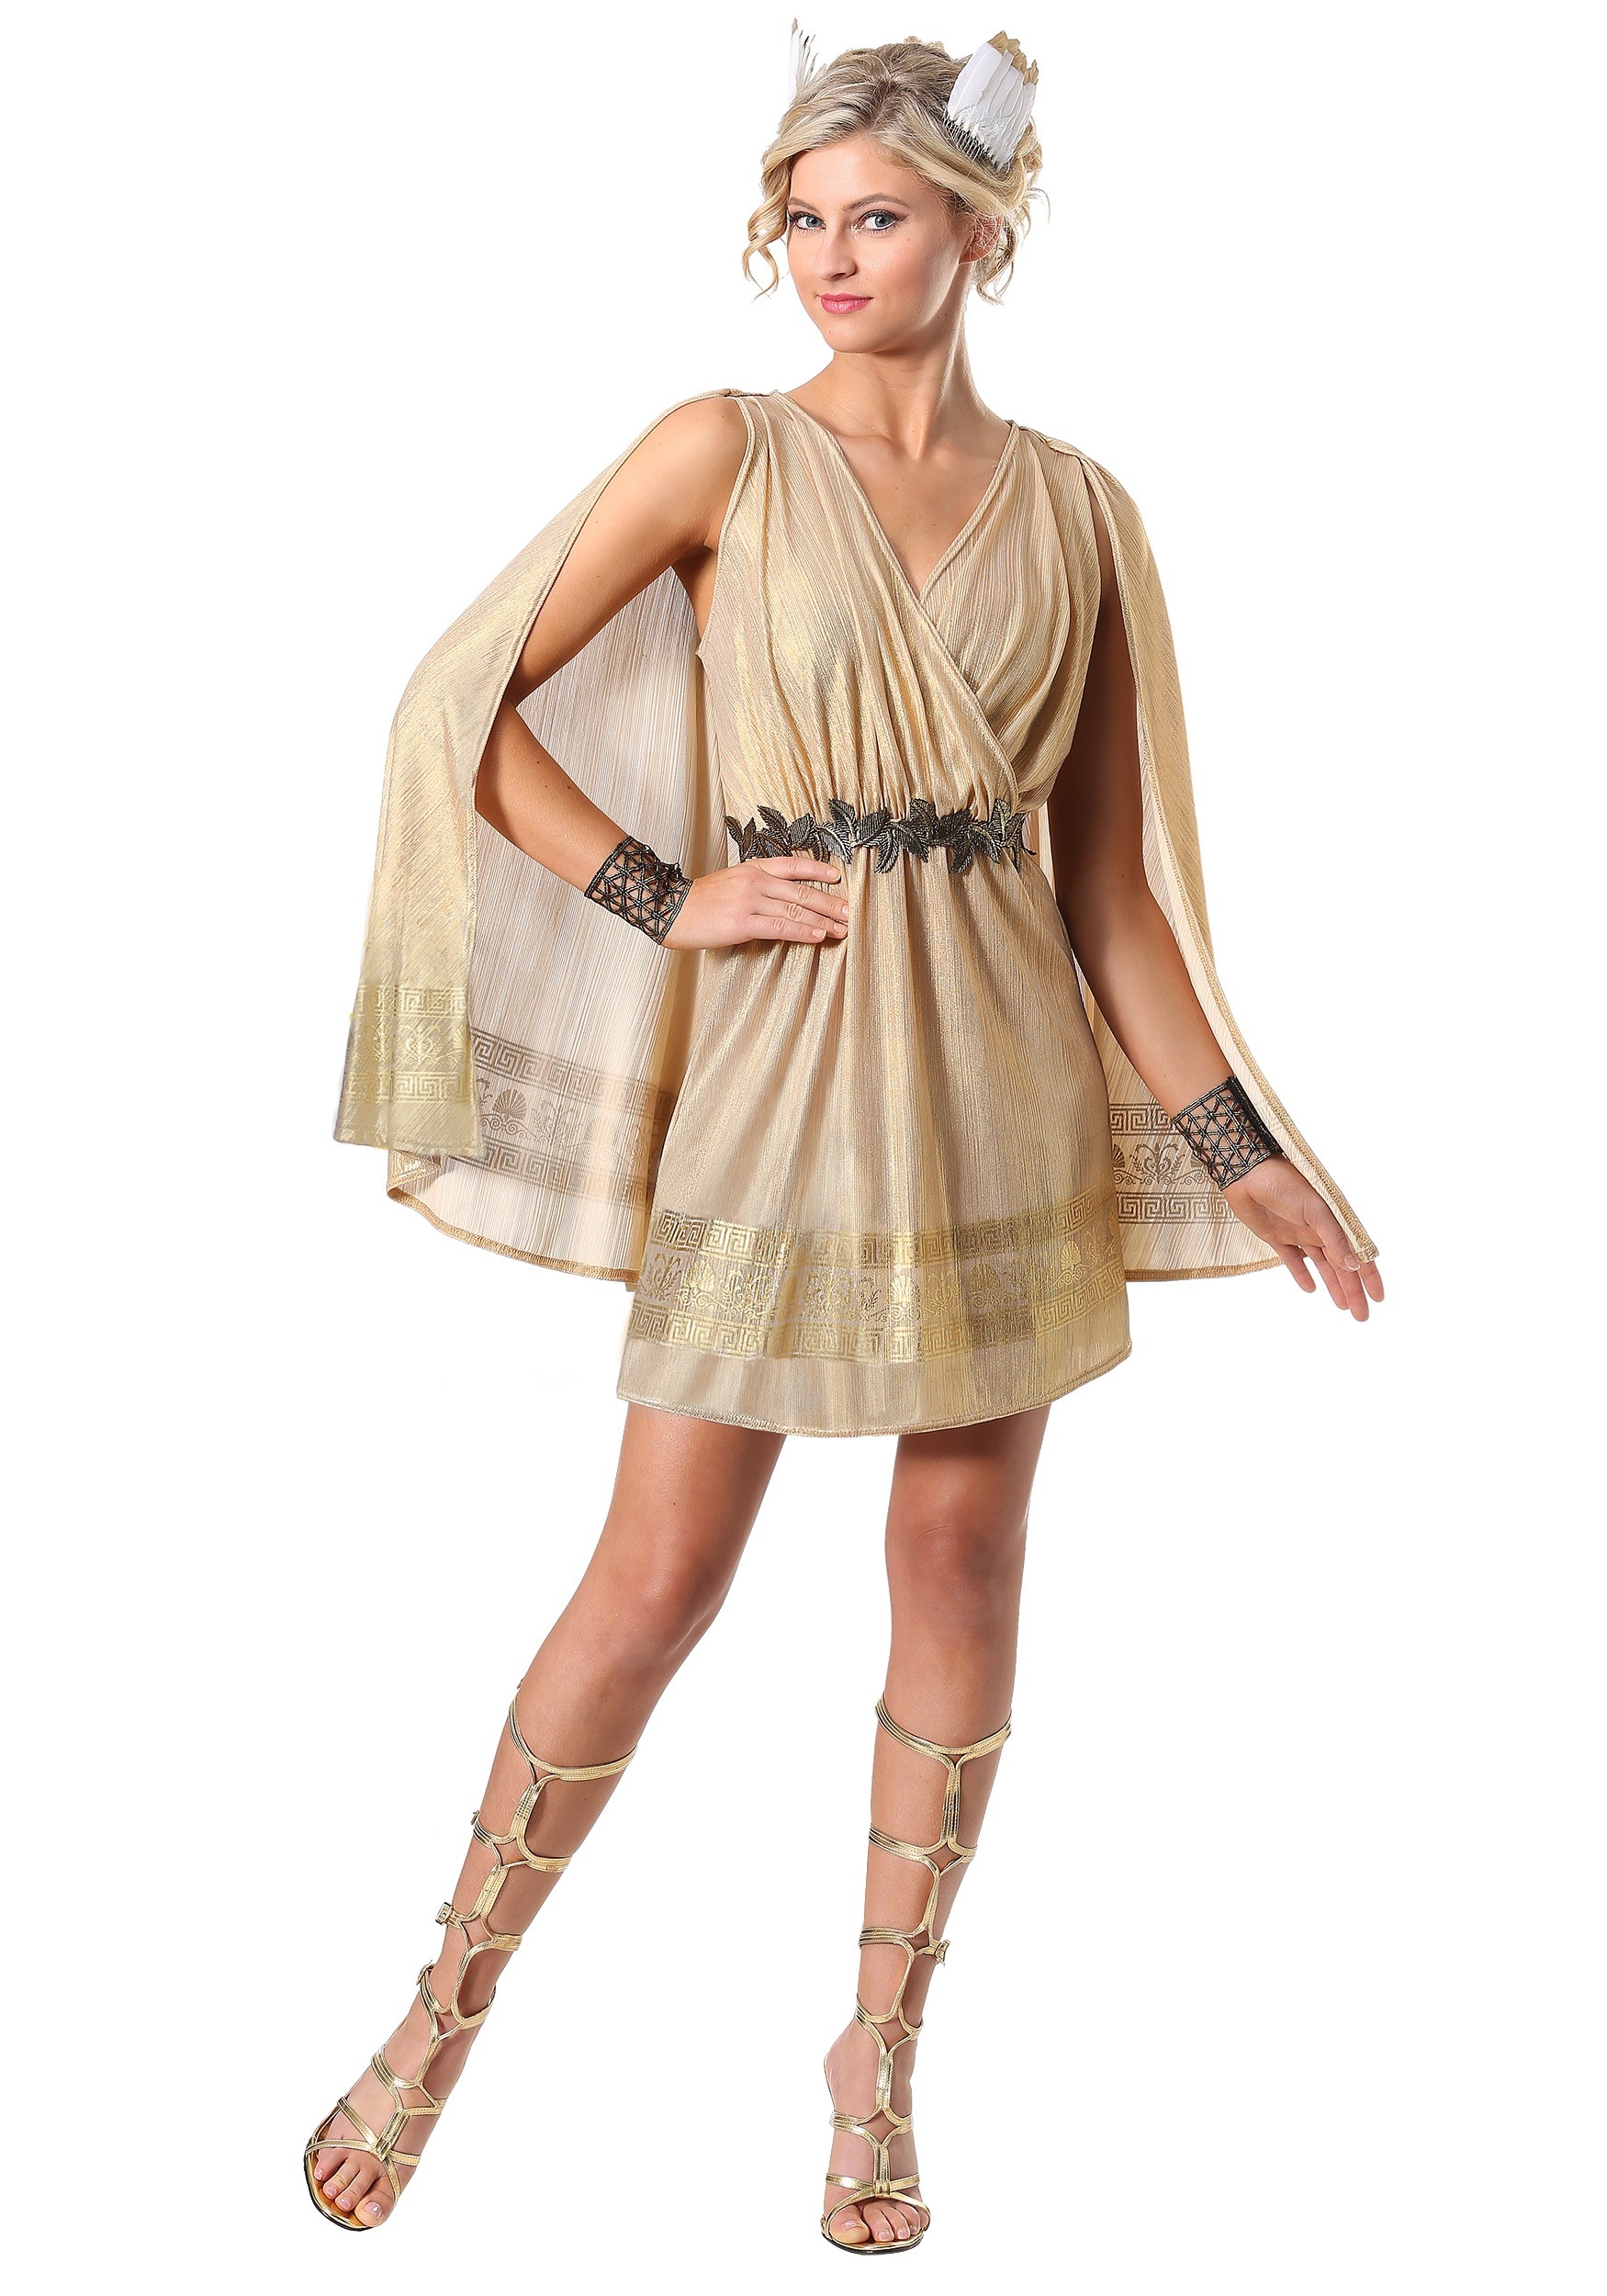 Radiant Women's Goddess Fancy Dress Costume